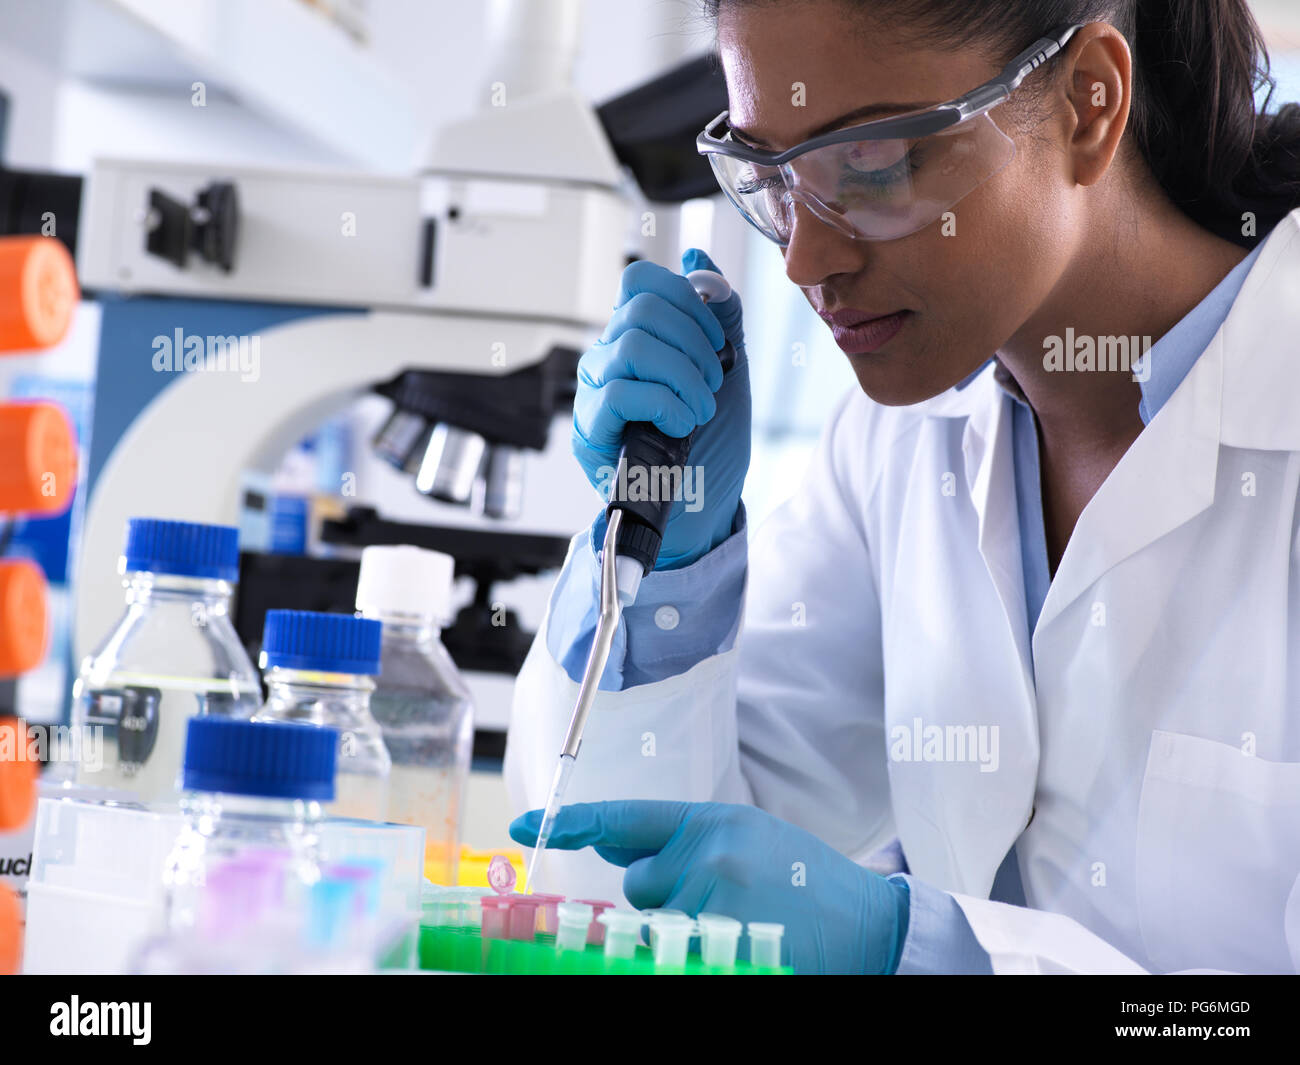 La investigación genética, investigadora química de ADN o de pipeteo de muestra en un frasco de Eppendorf, análisis en el laboratorio. Foto de stock